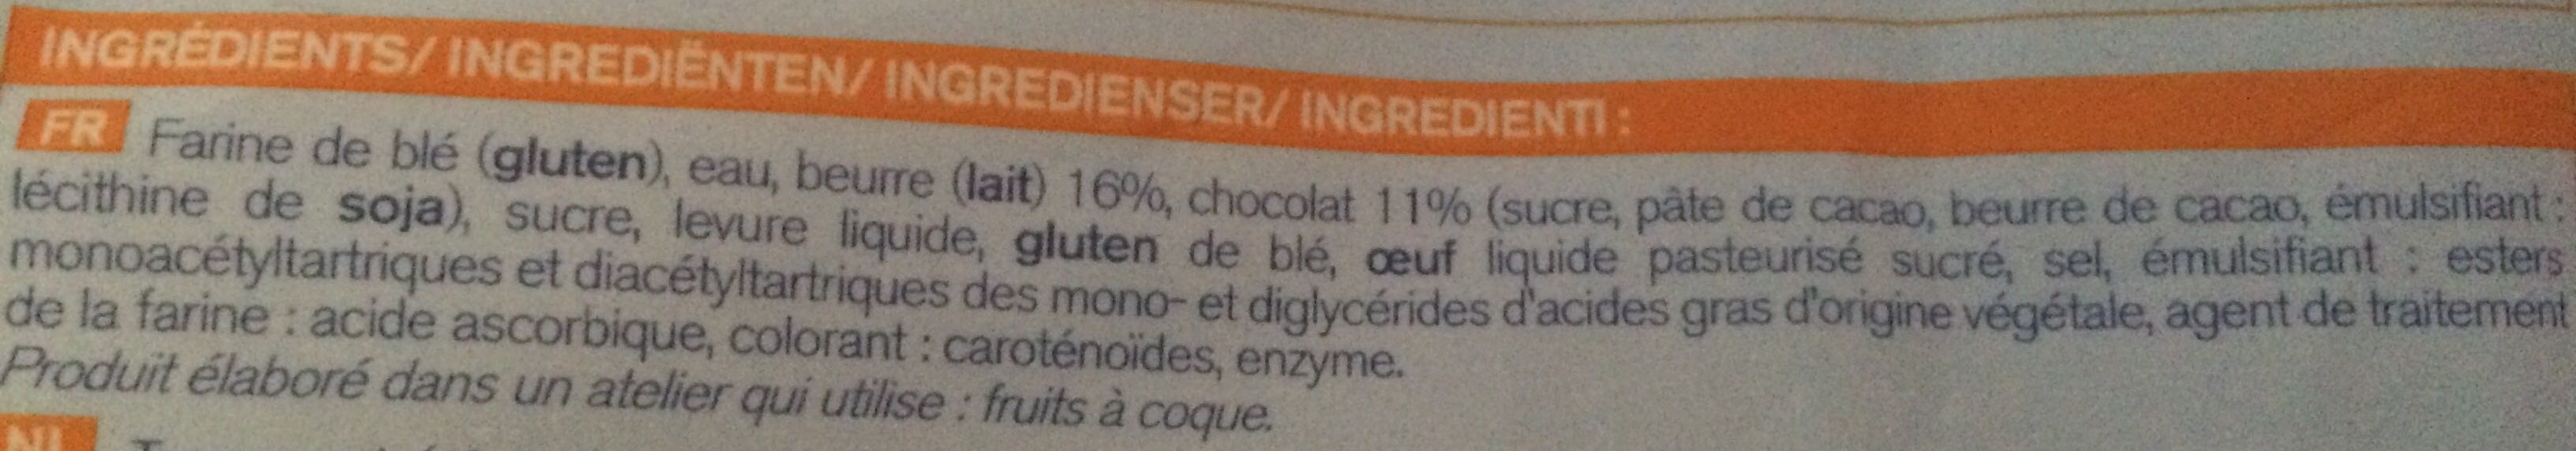 5 pains au chocolat pur beurre - Ingredients - fr